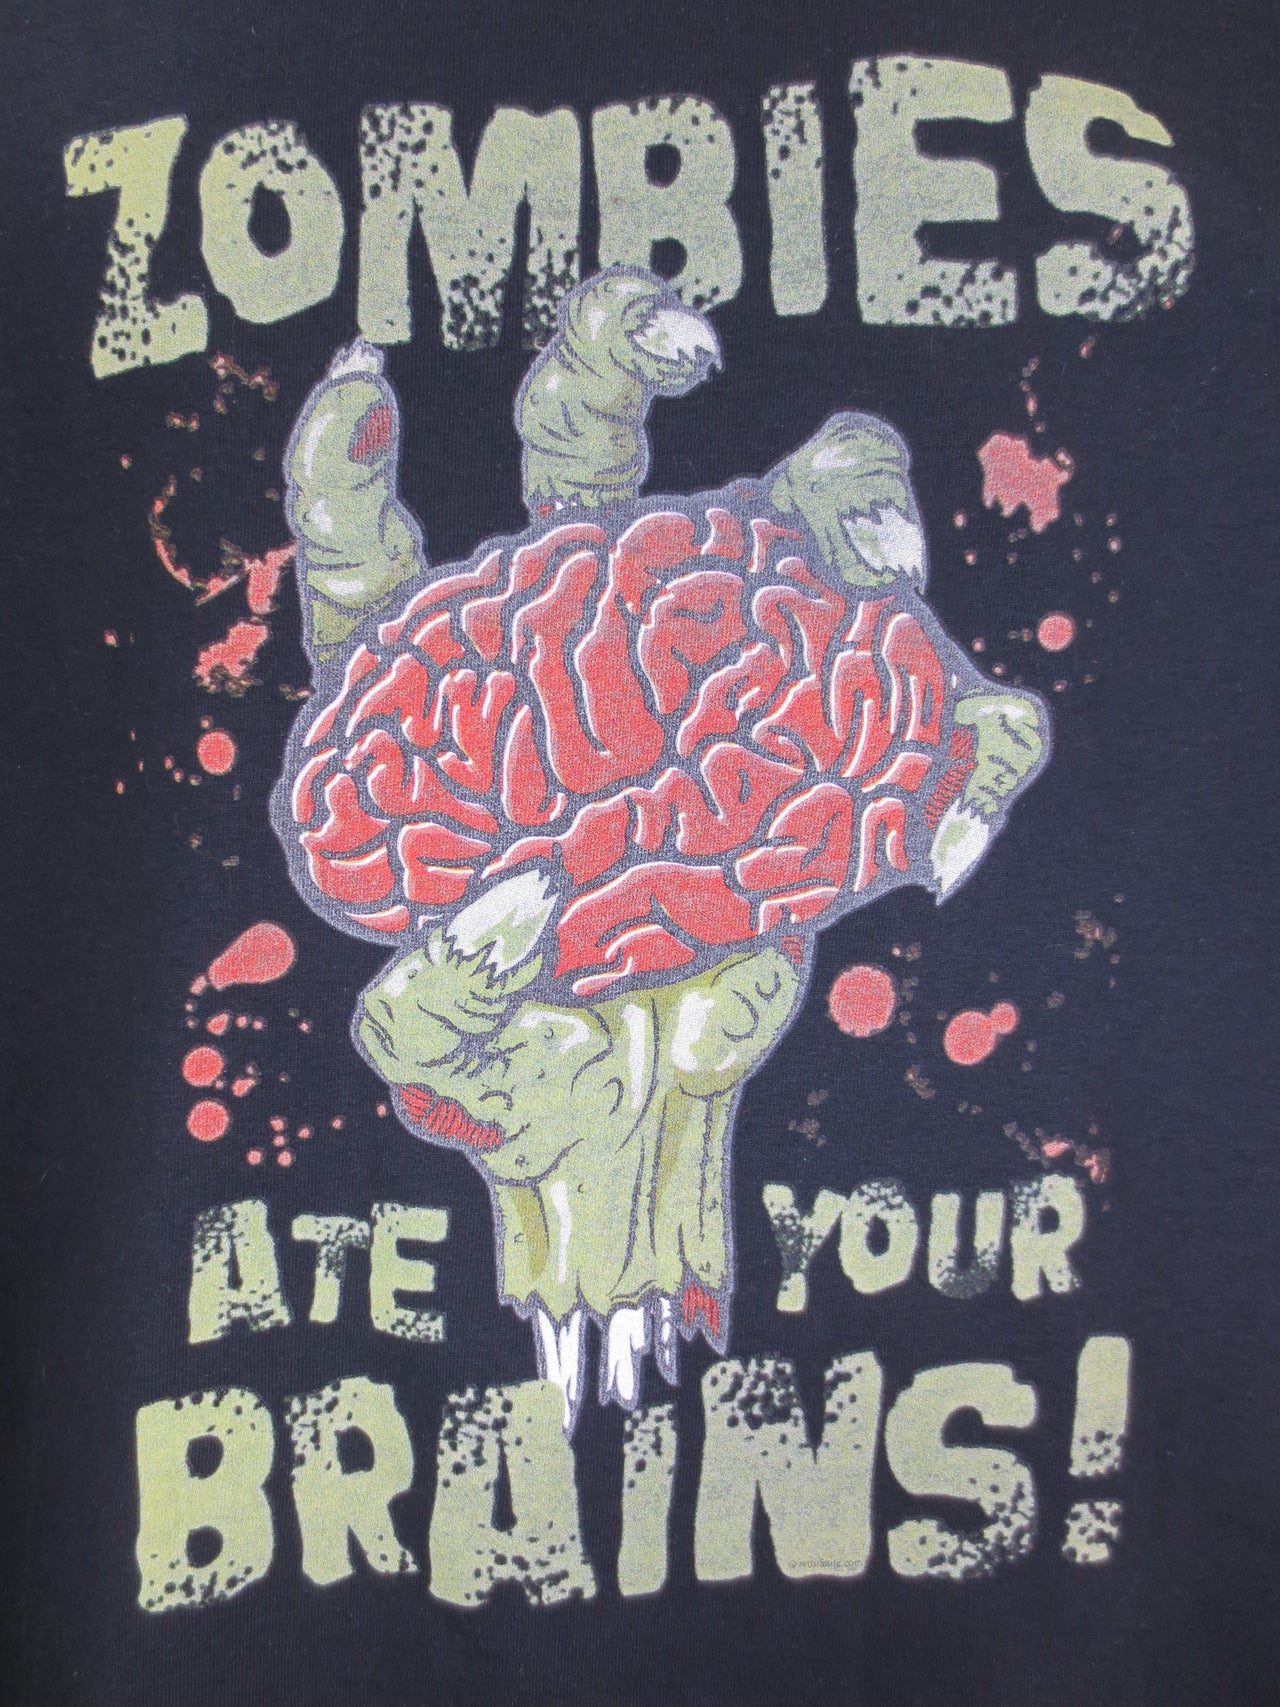 Zombies Ate Your Brains Tshirt - TshirtNow.net - 3